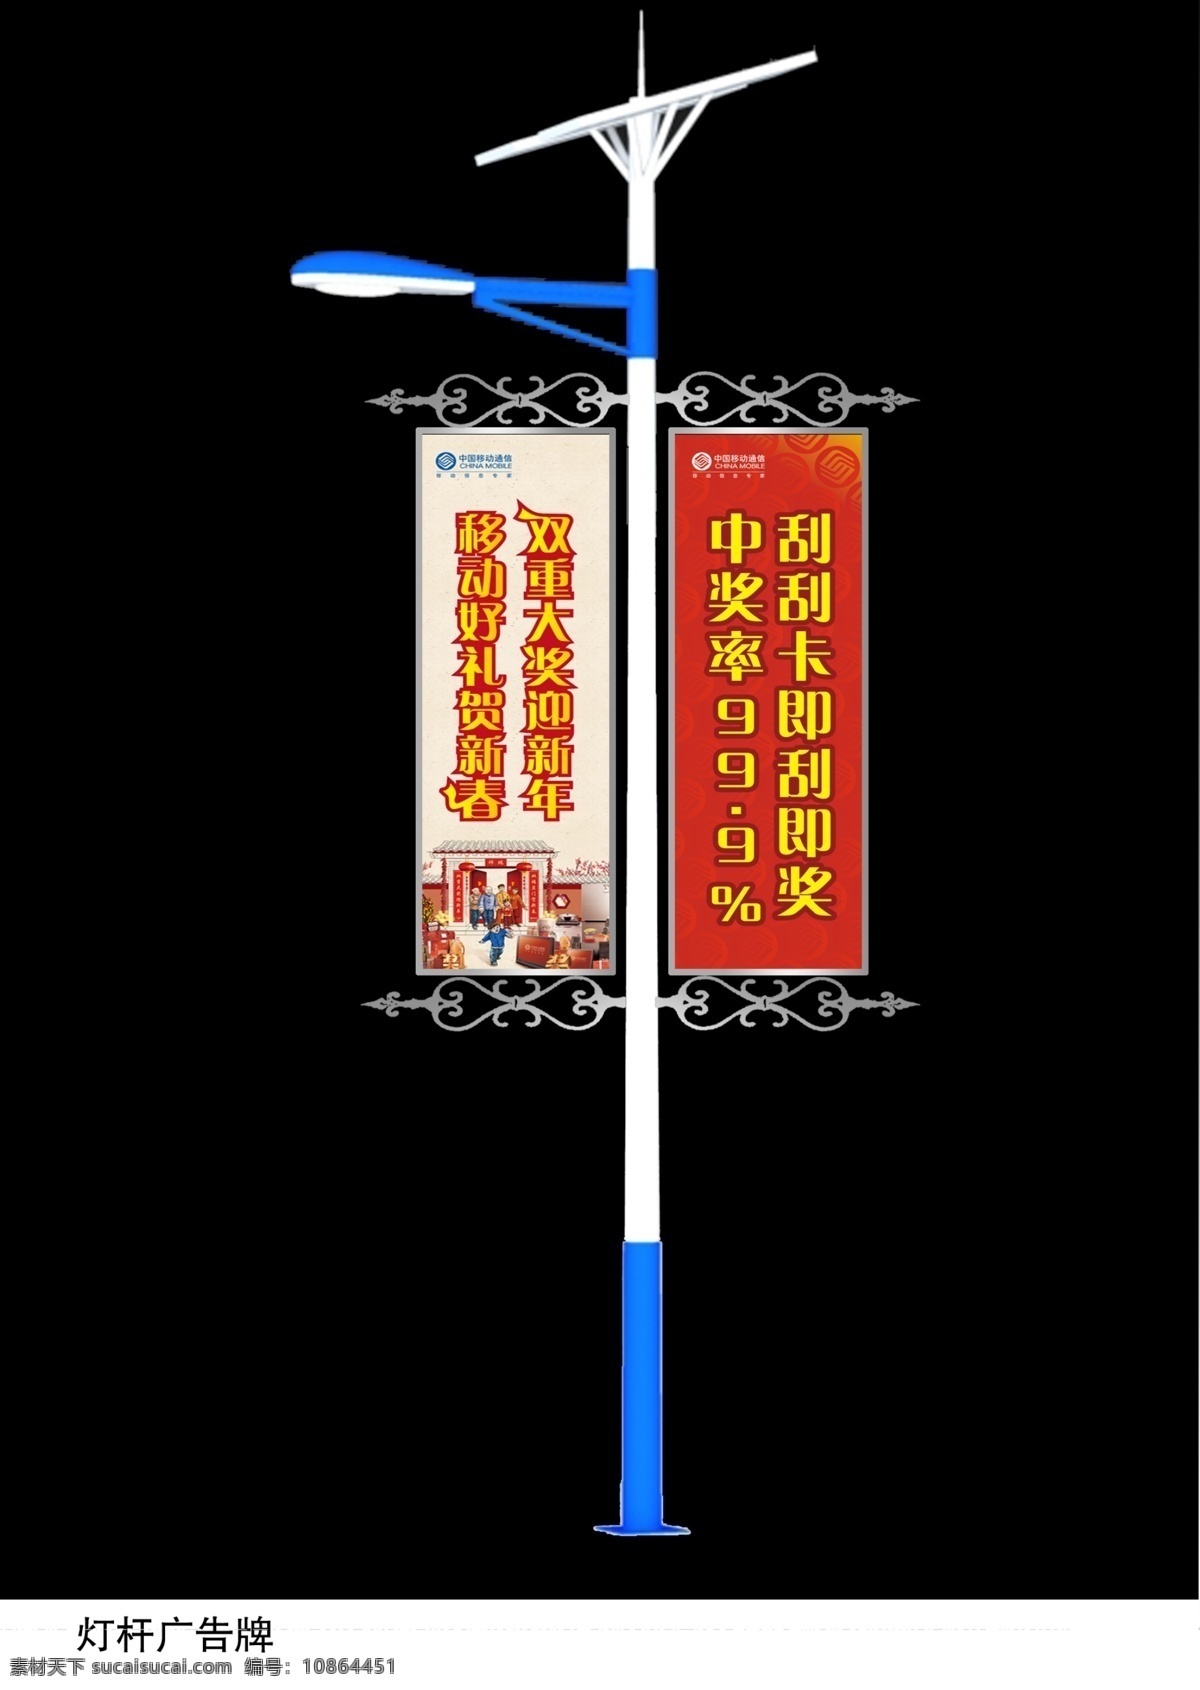 中国移动 广告设计模板 国内广告设计 源文件库 单 头头 灯杆 灯箱 灯杆灯箱 矢量图 现代科技